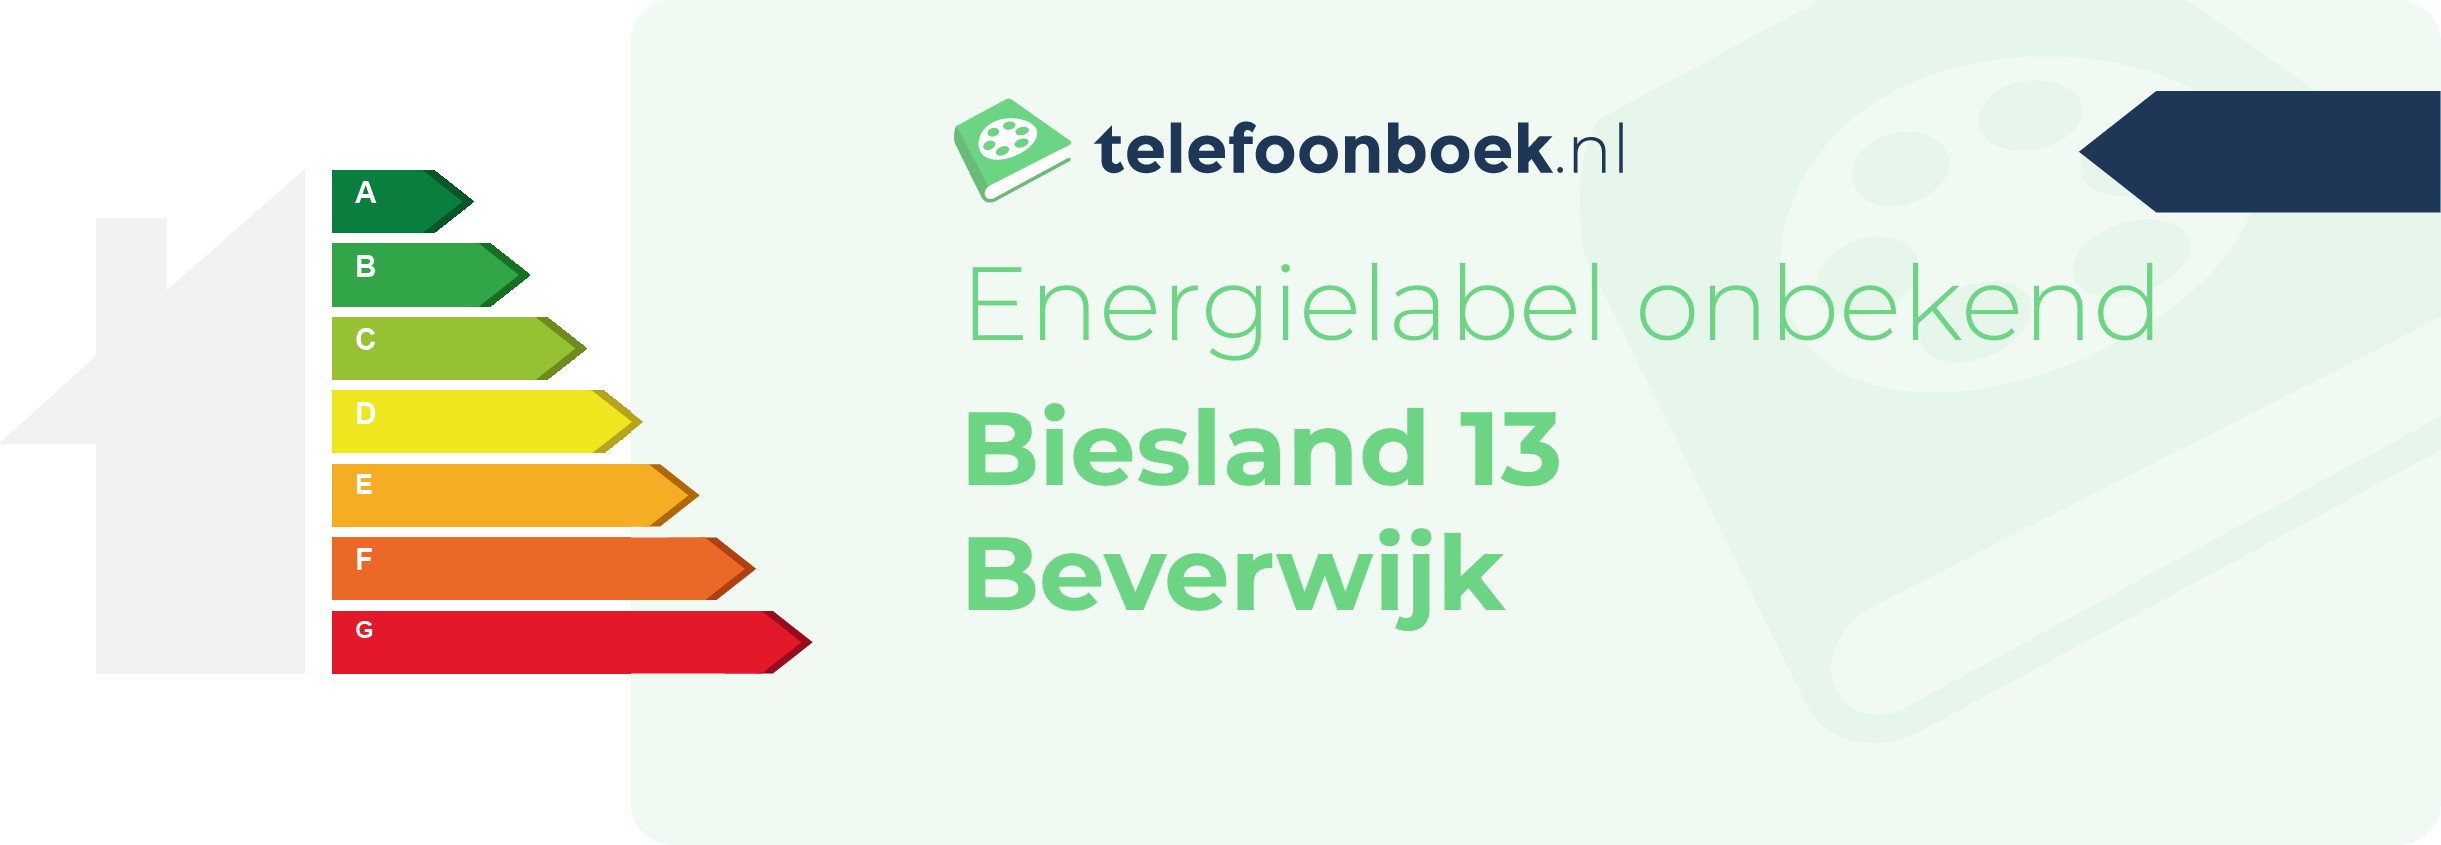 Energielabel Biesland 13 Beverwijk